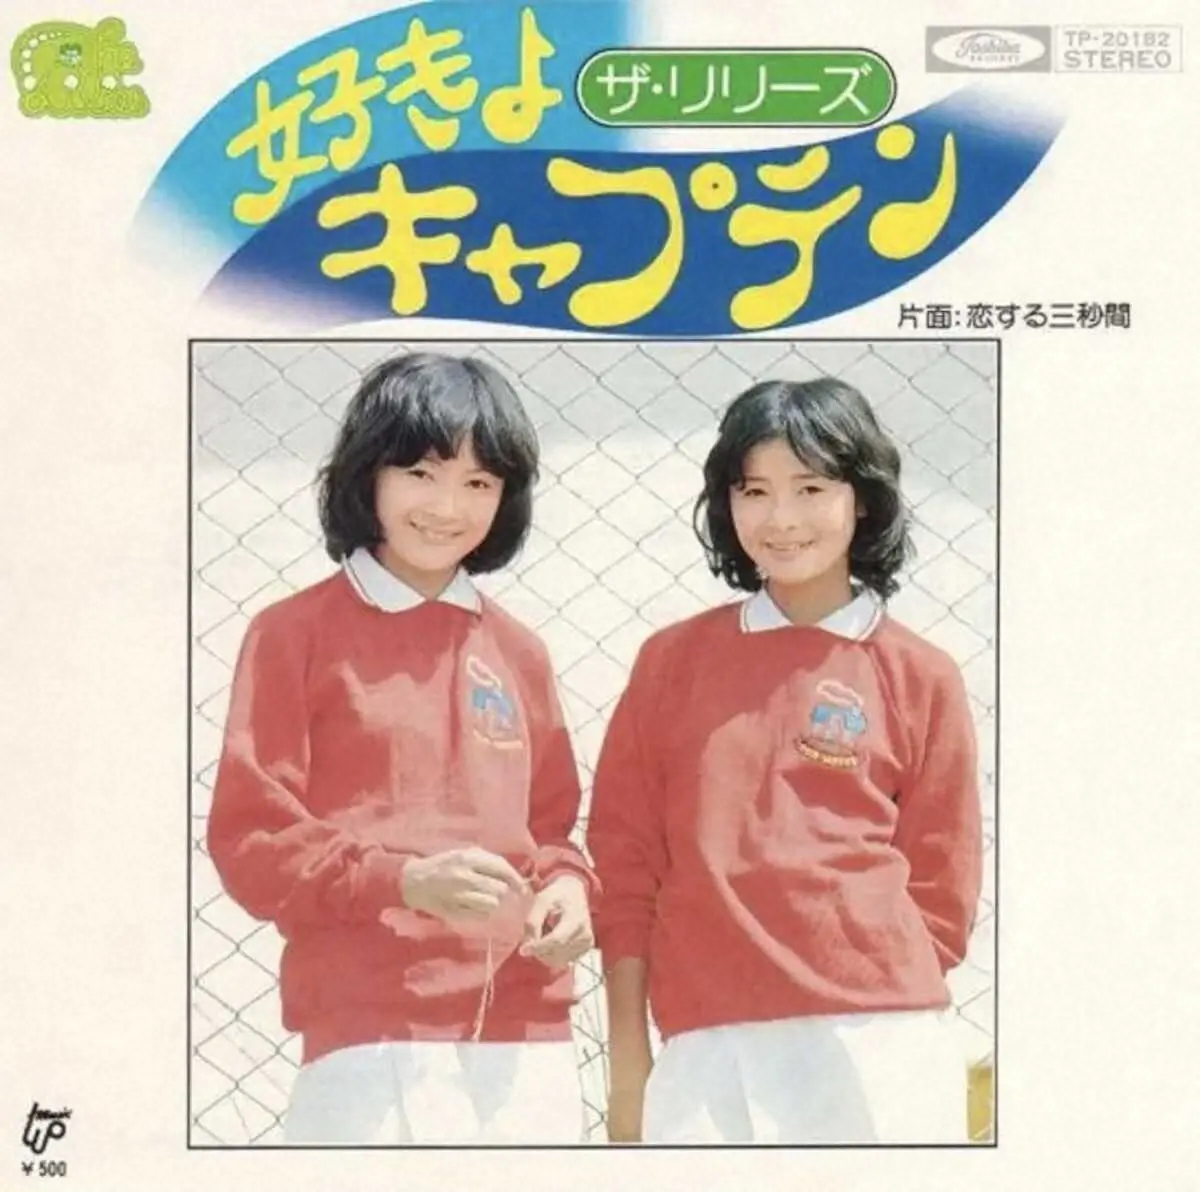 ザ・リリーズの大ヒット曲「好きよキャプテン」のジャケット。(左から)姉・奈緒美、妹・真由美さん